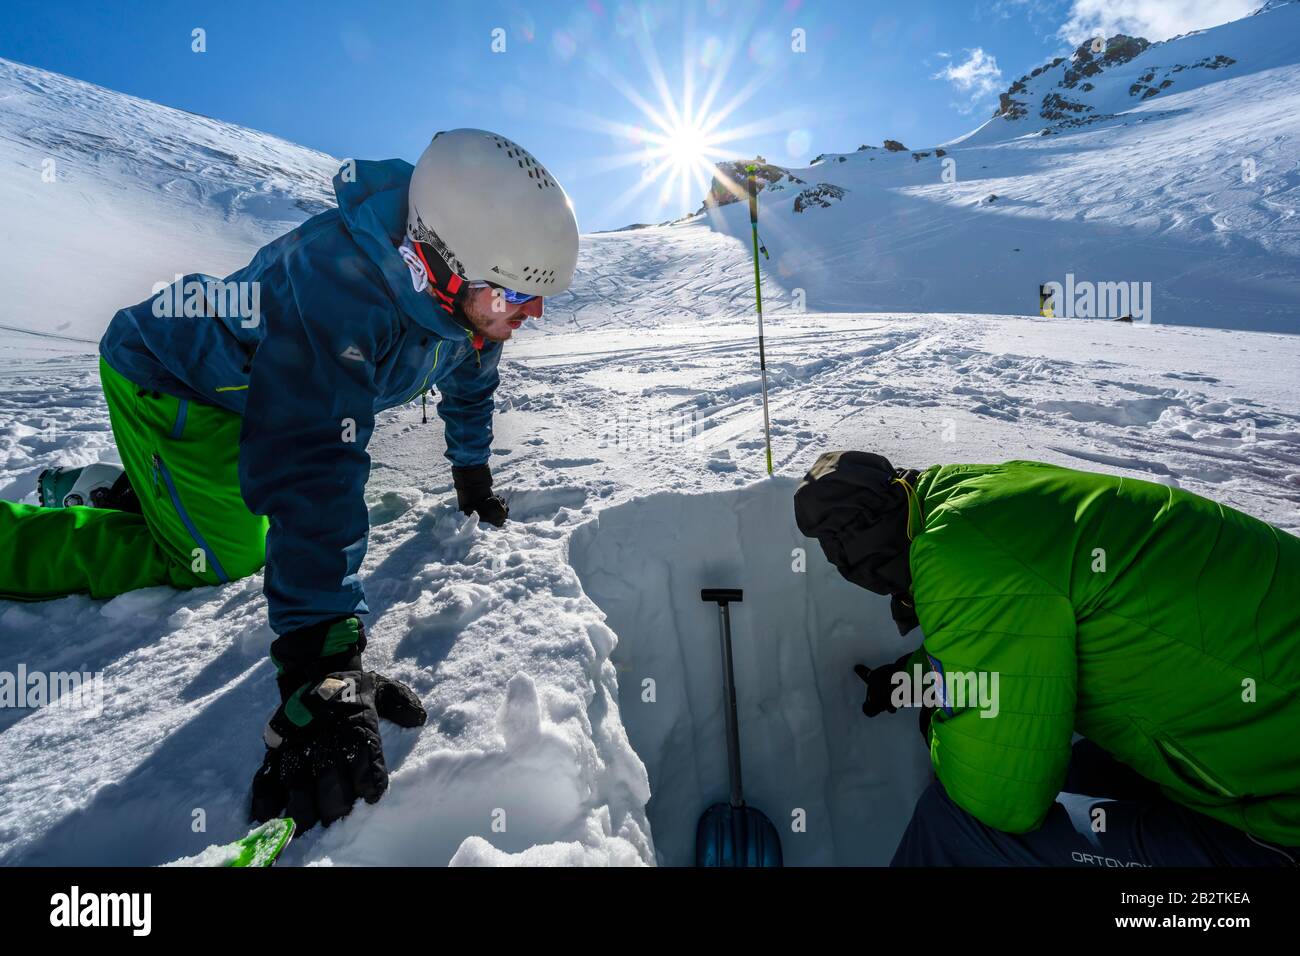 Skitourer im Schnee, erklärt der Mensch Schnee-Profil, Wattentaler Lizum, Tux Alps, Tyrol, Österreich Stockfoto